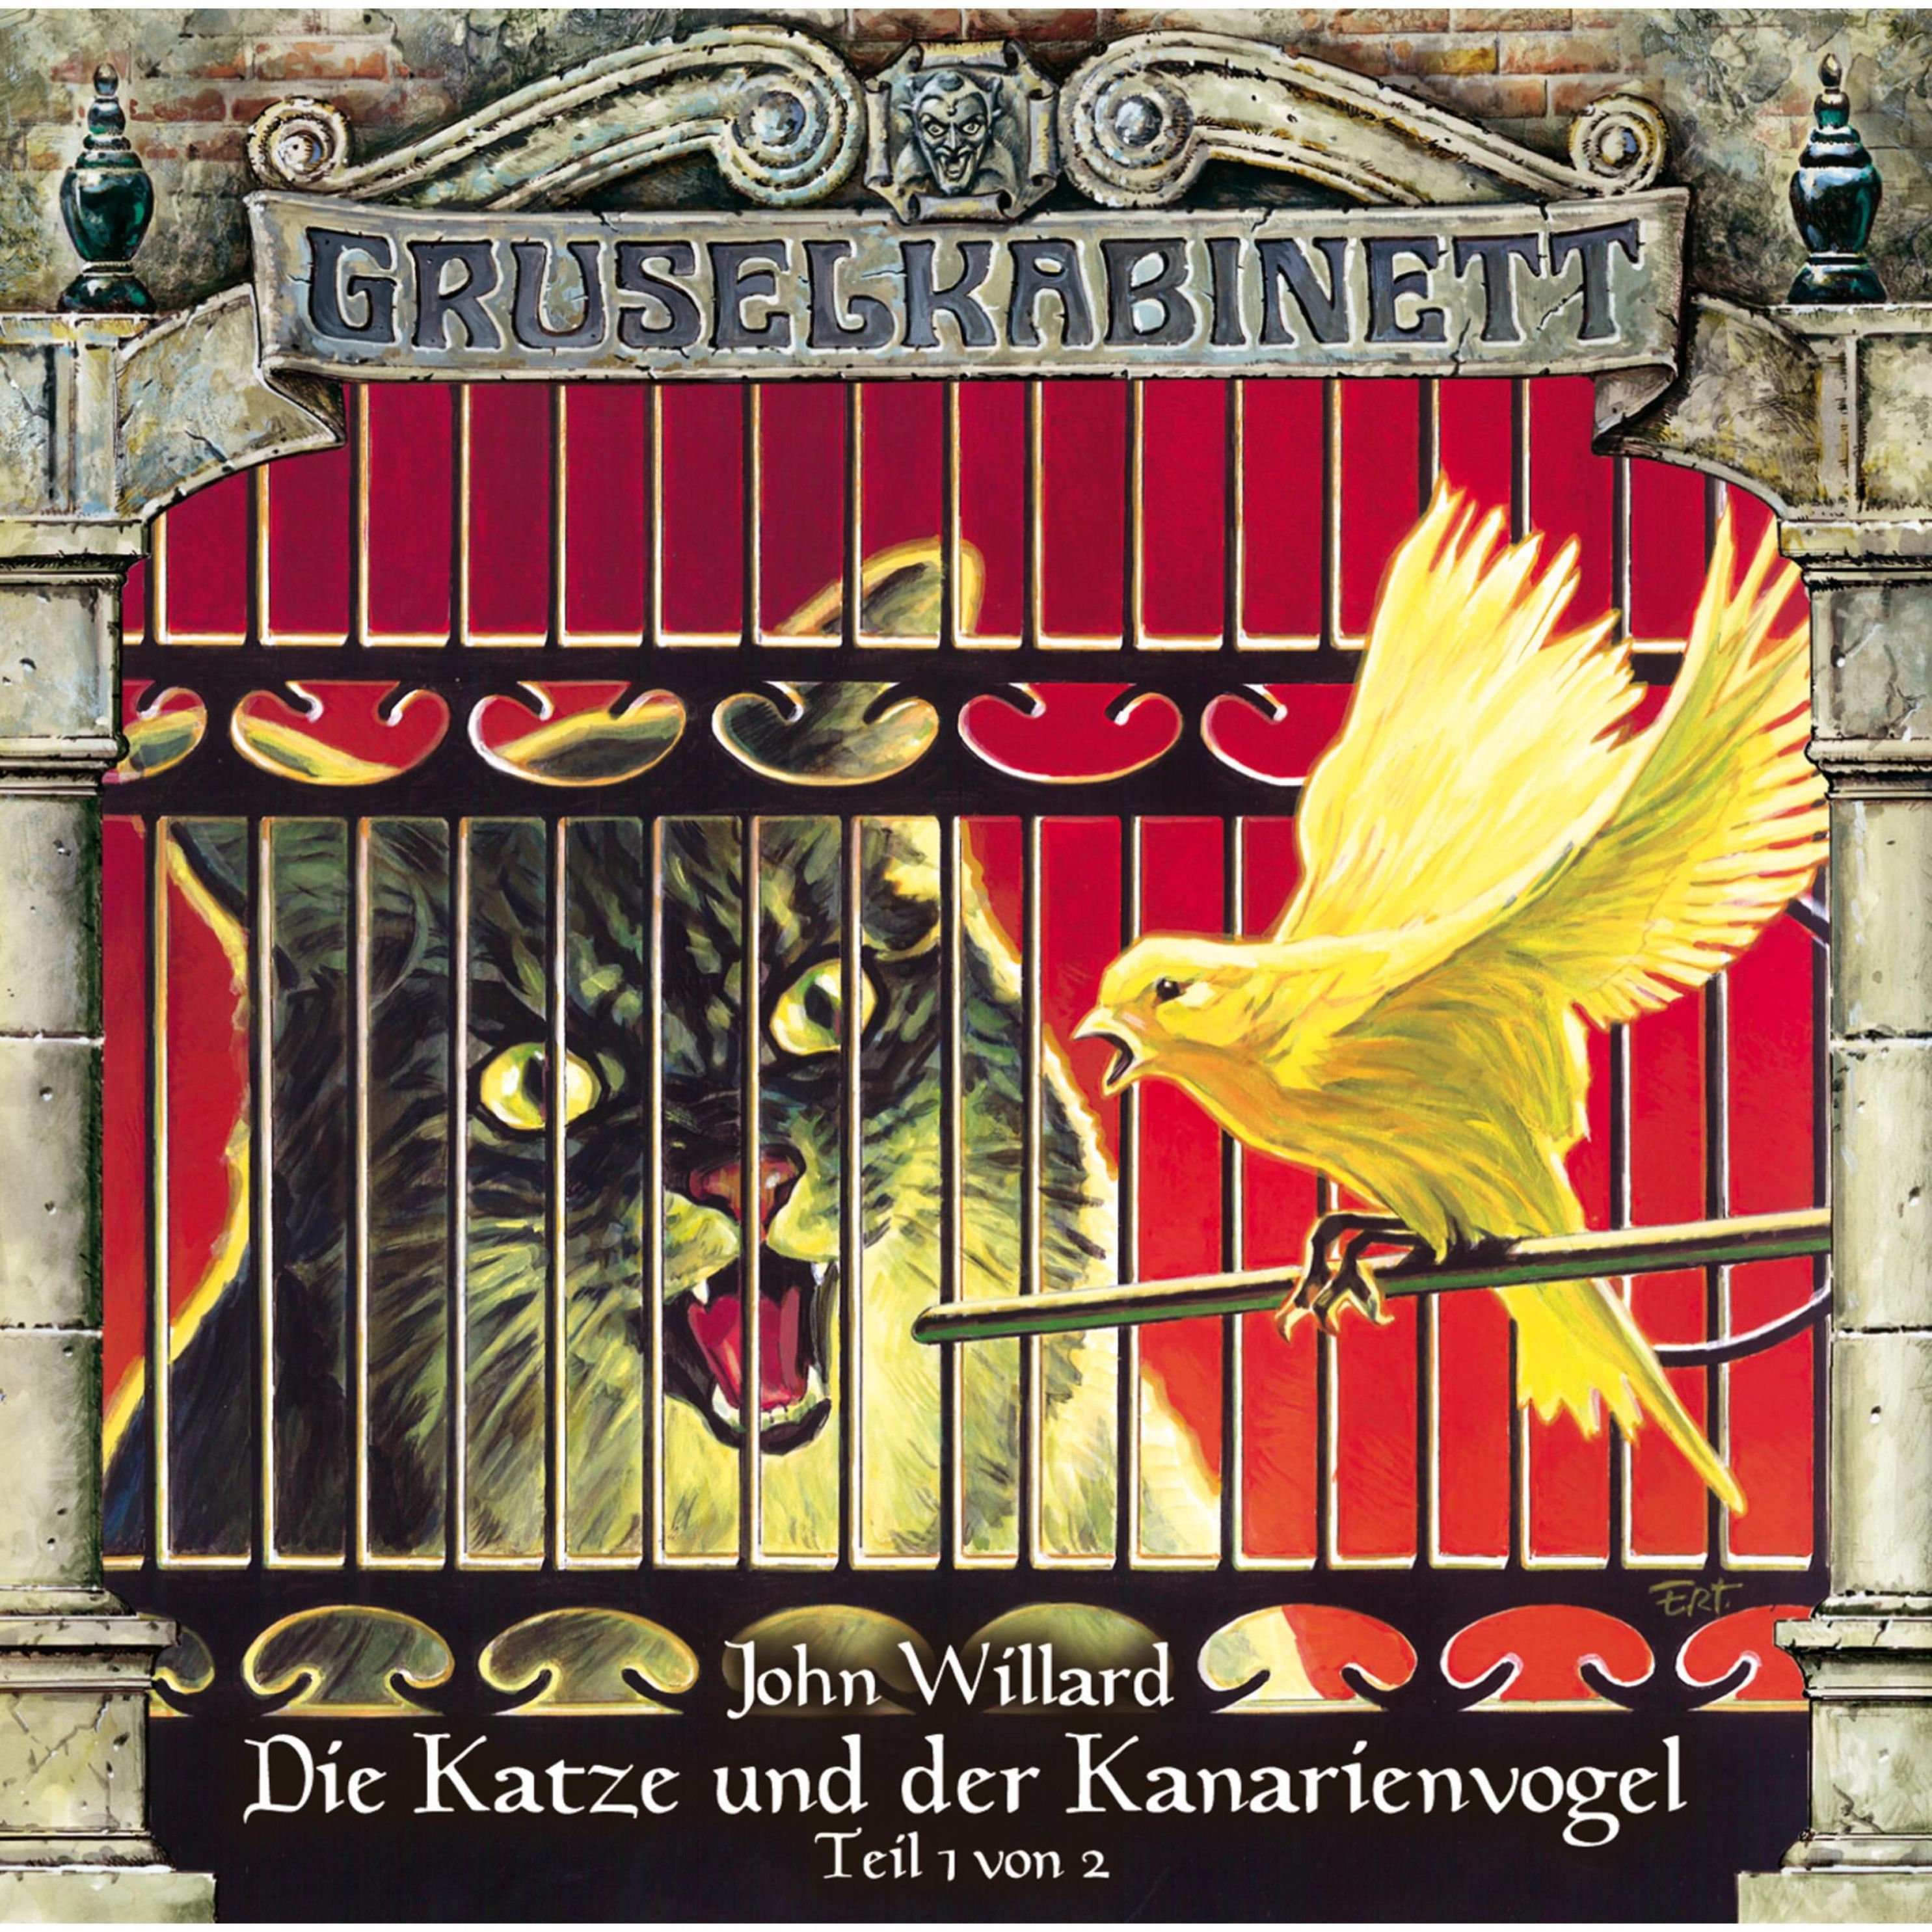 Gruselkabinett - 84 - Die Katze und der Kanarienvogel Teil 1 von 2 Hörbuch  Download